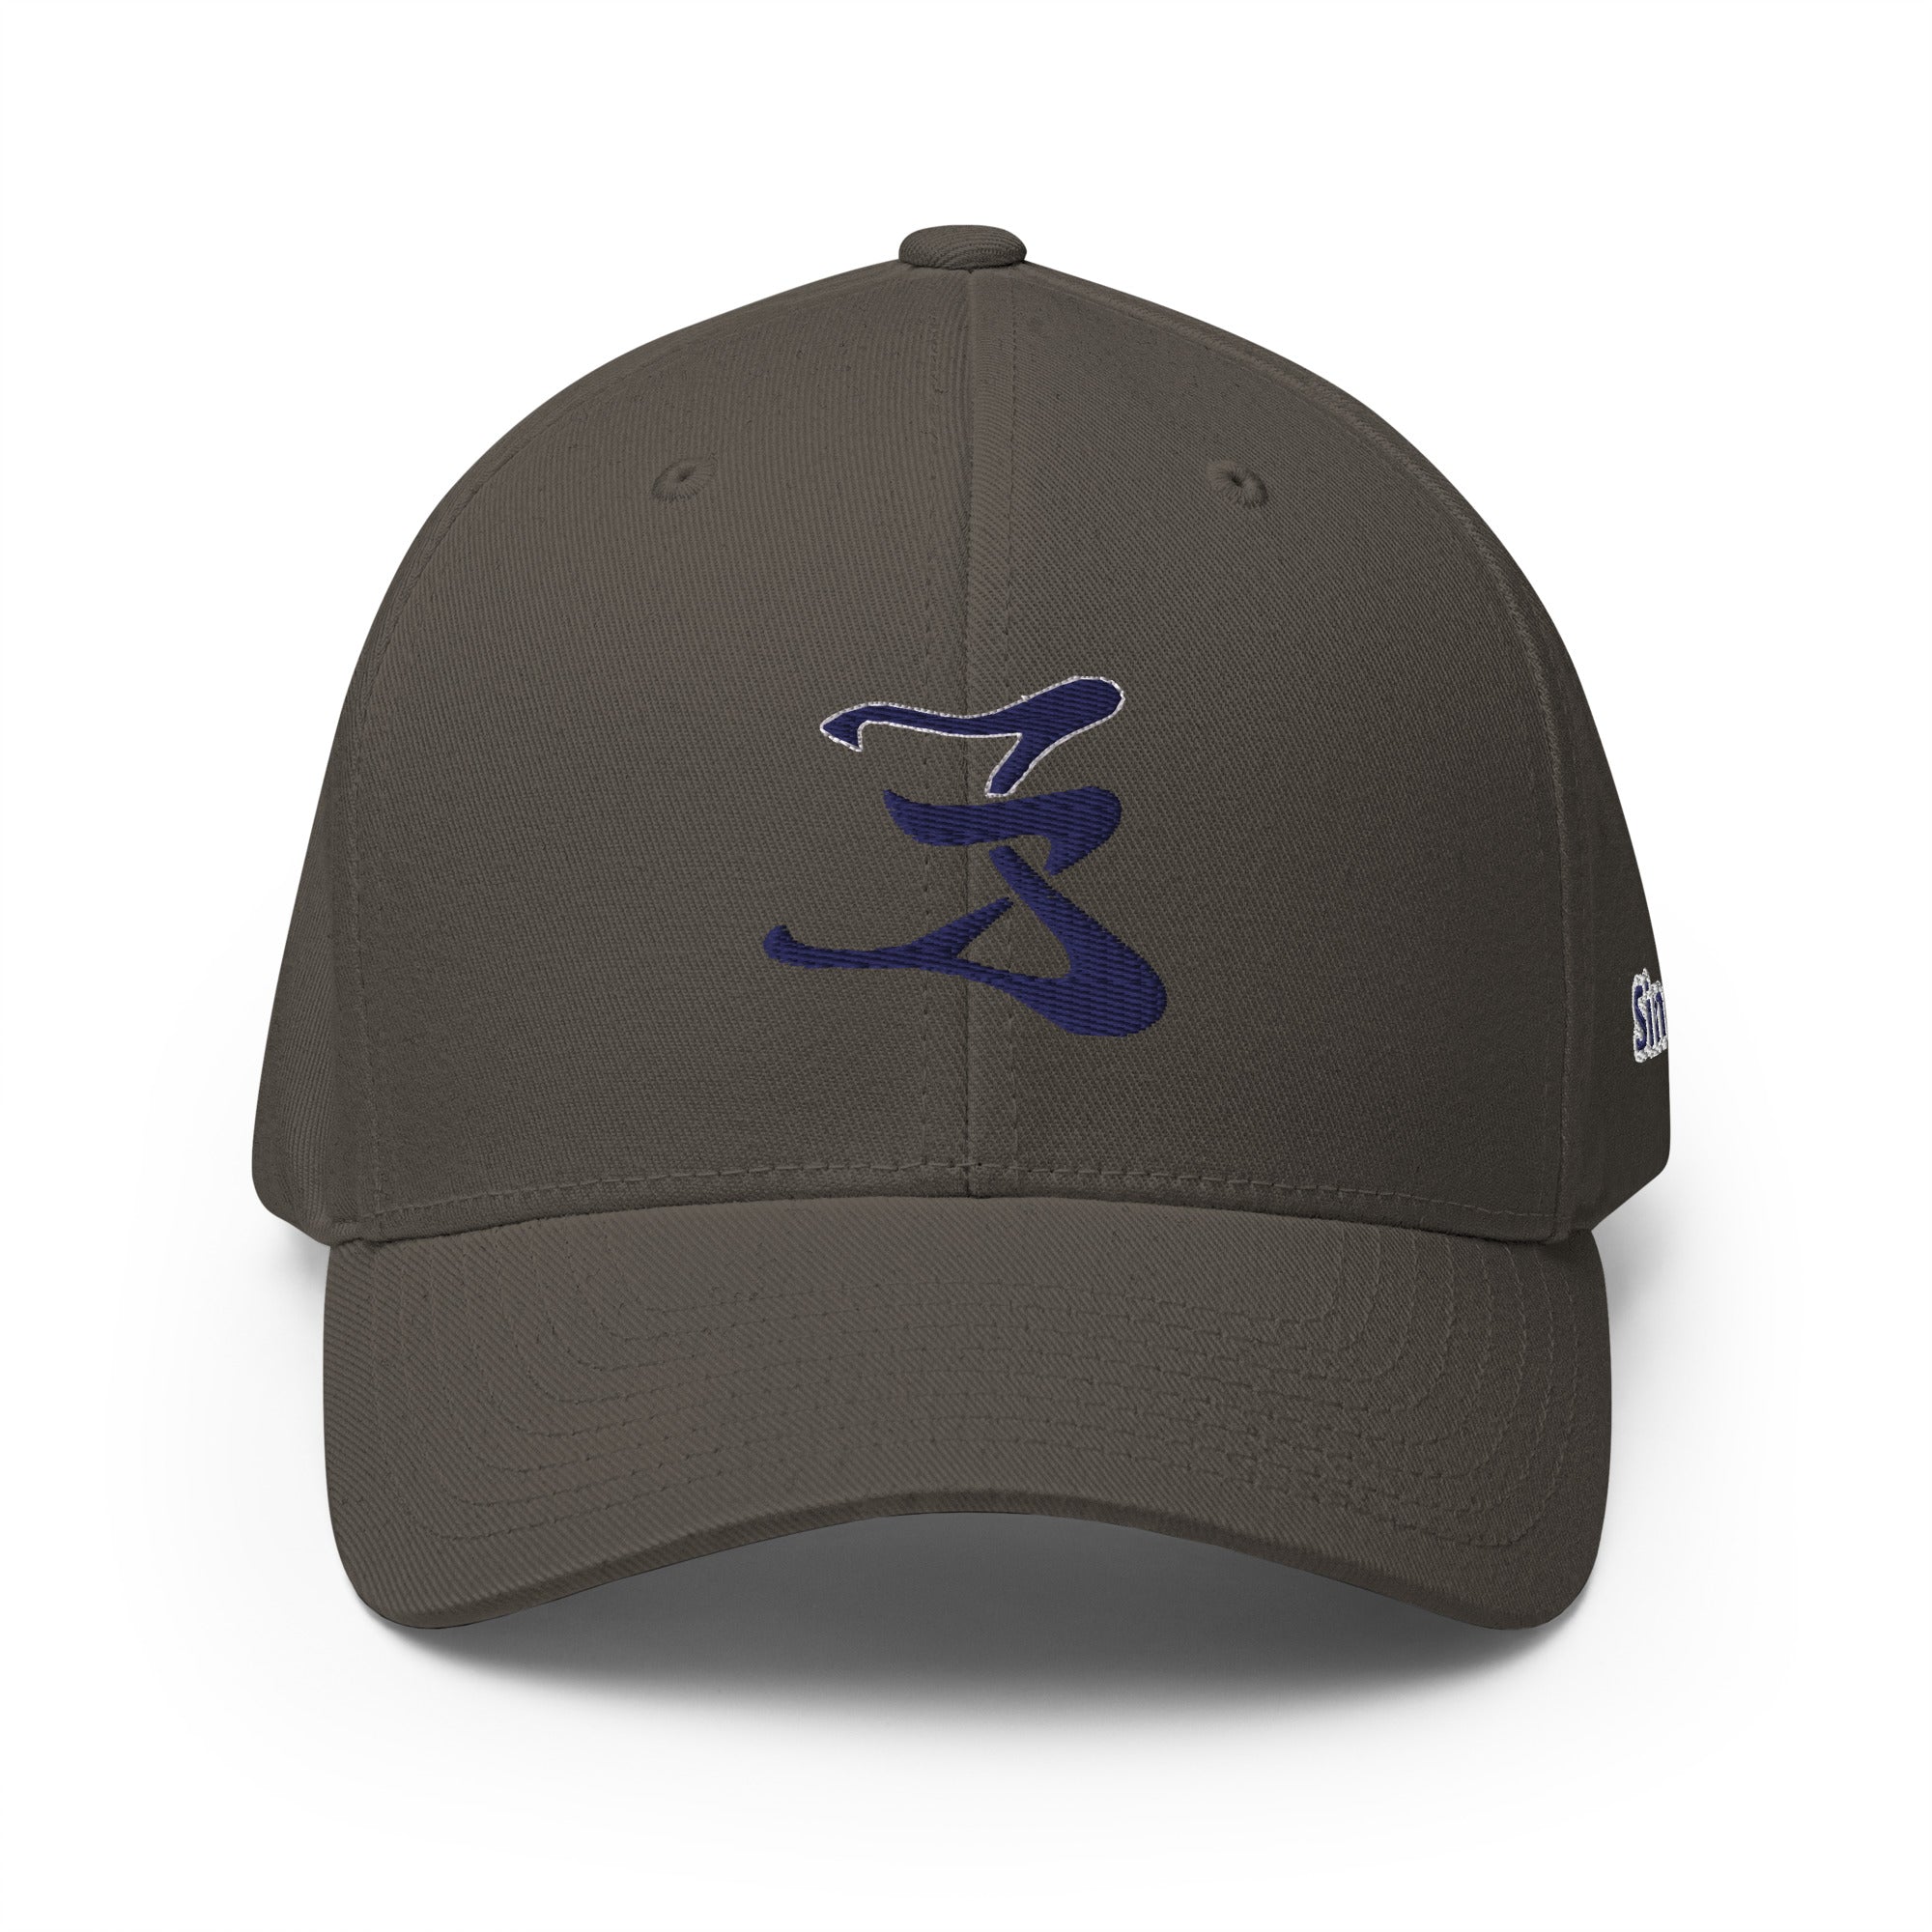 Structured Twill Cap Navy Blue logo #1